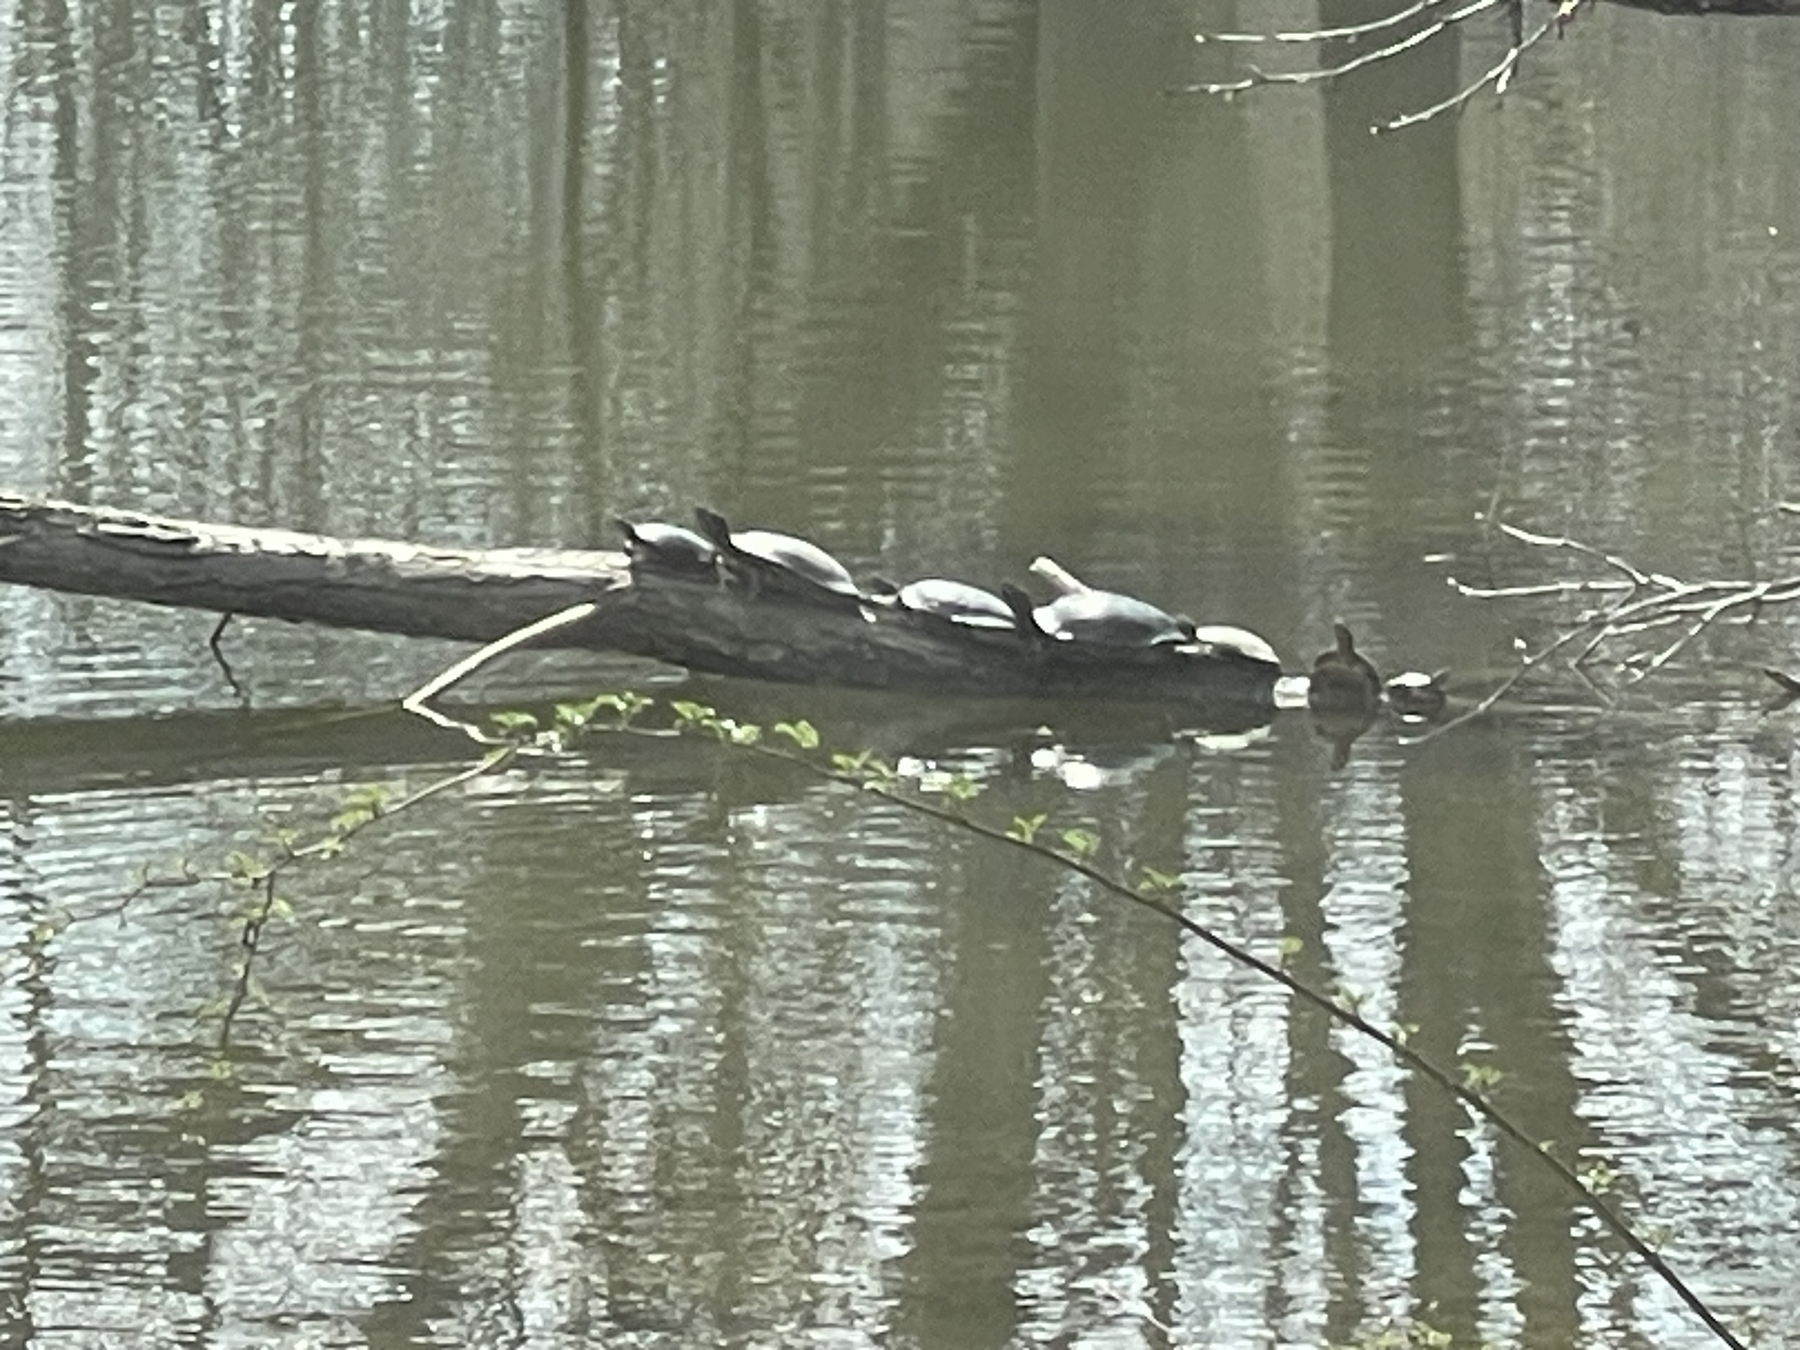 7 turtles on a log 